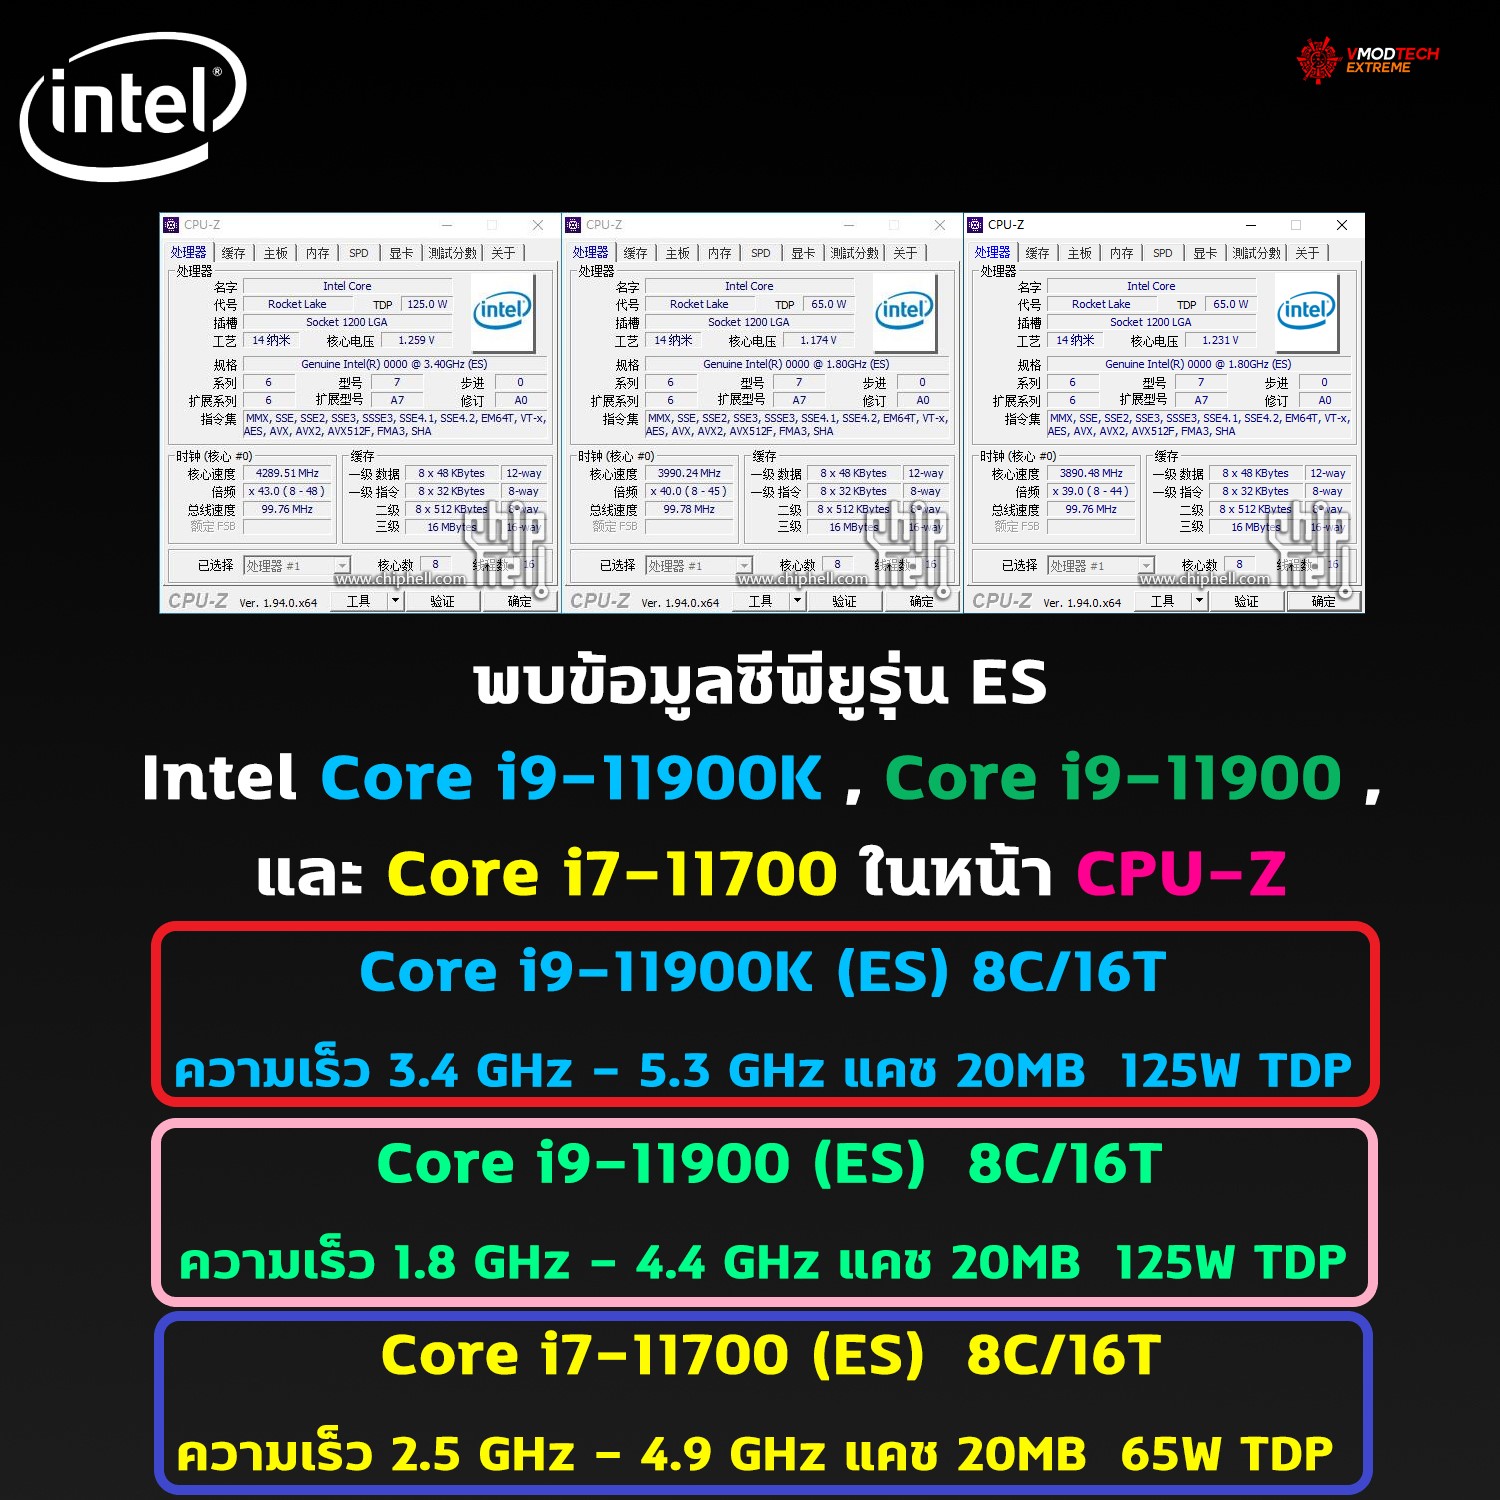 intel core i9 11900k core i9 11900 core i7 11700 พบข้อมูลซีพียู Intel Core i9 11900K , Core i9 11900 , และ Core i7 11700 ในหน้า CPU Z อย่างไม่เป็นทางการ